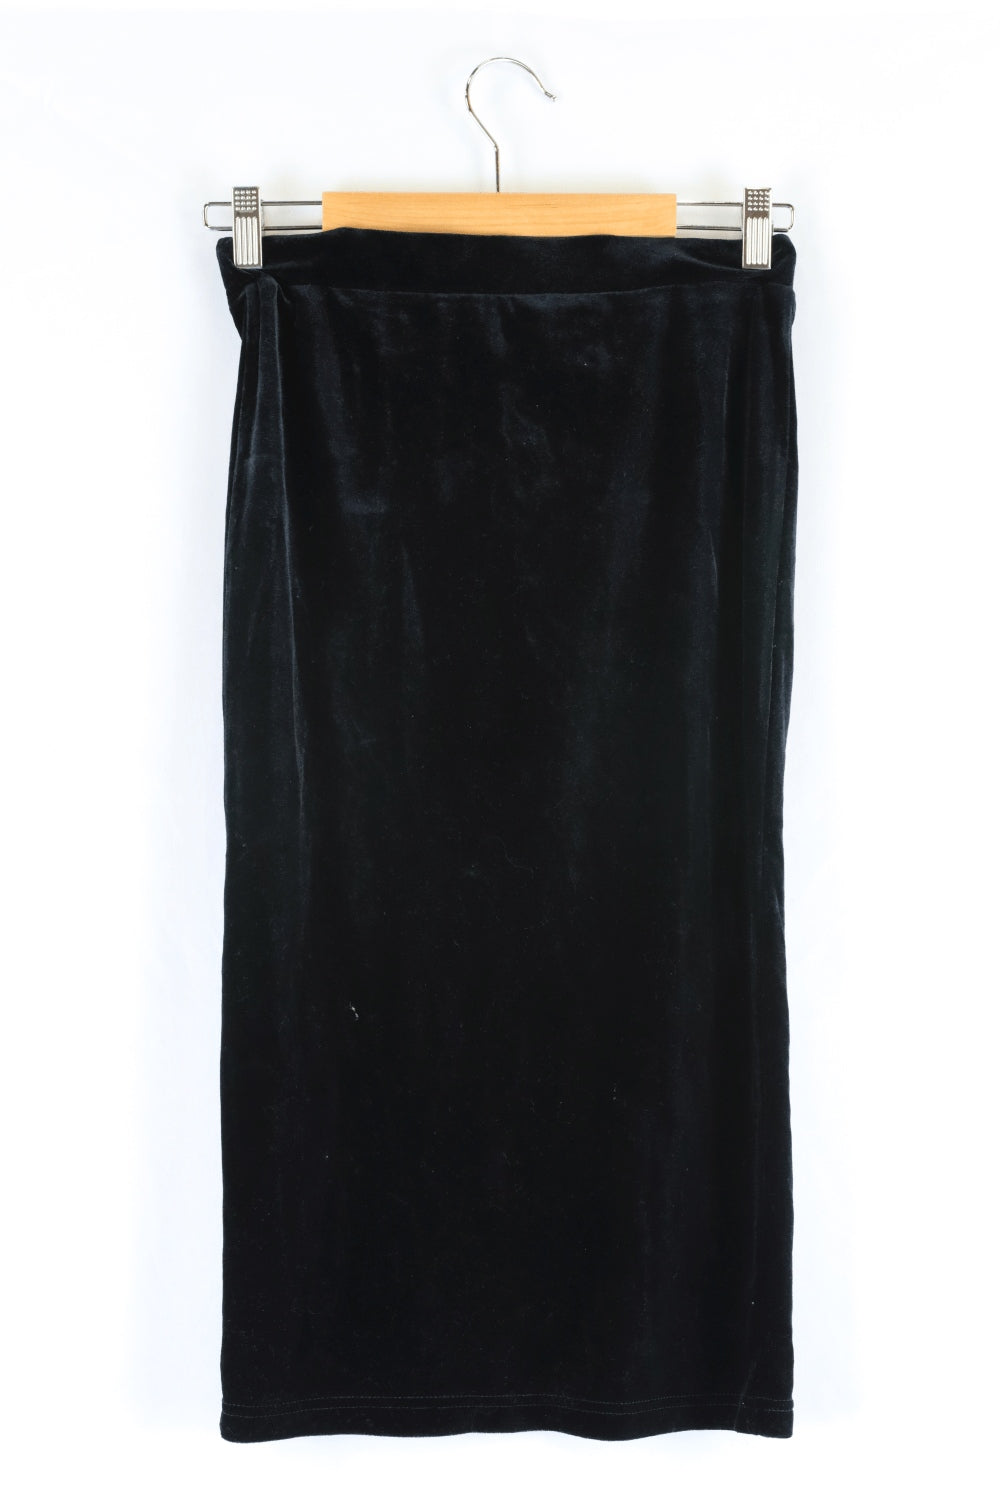 Bardot Velvet Black Skirt 10